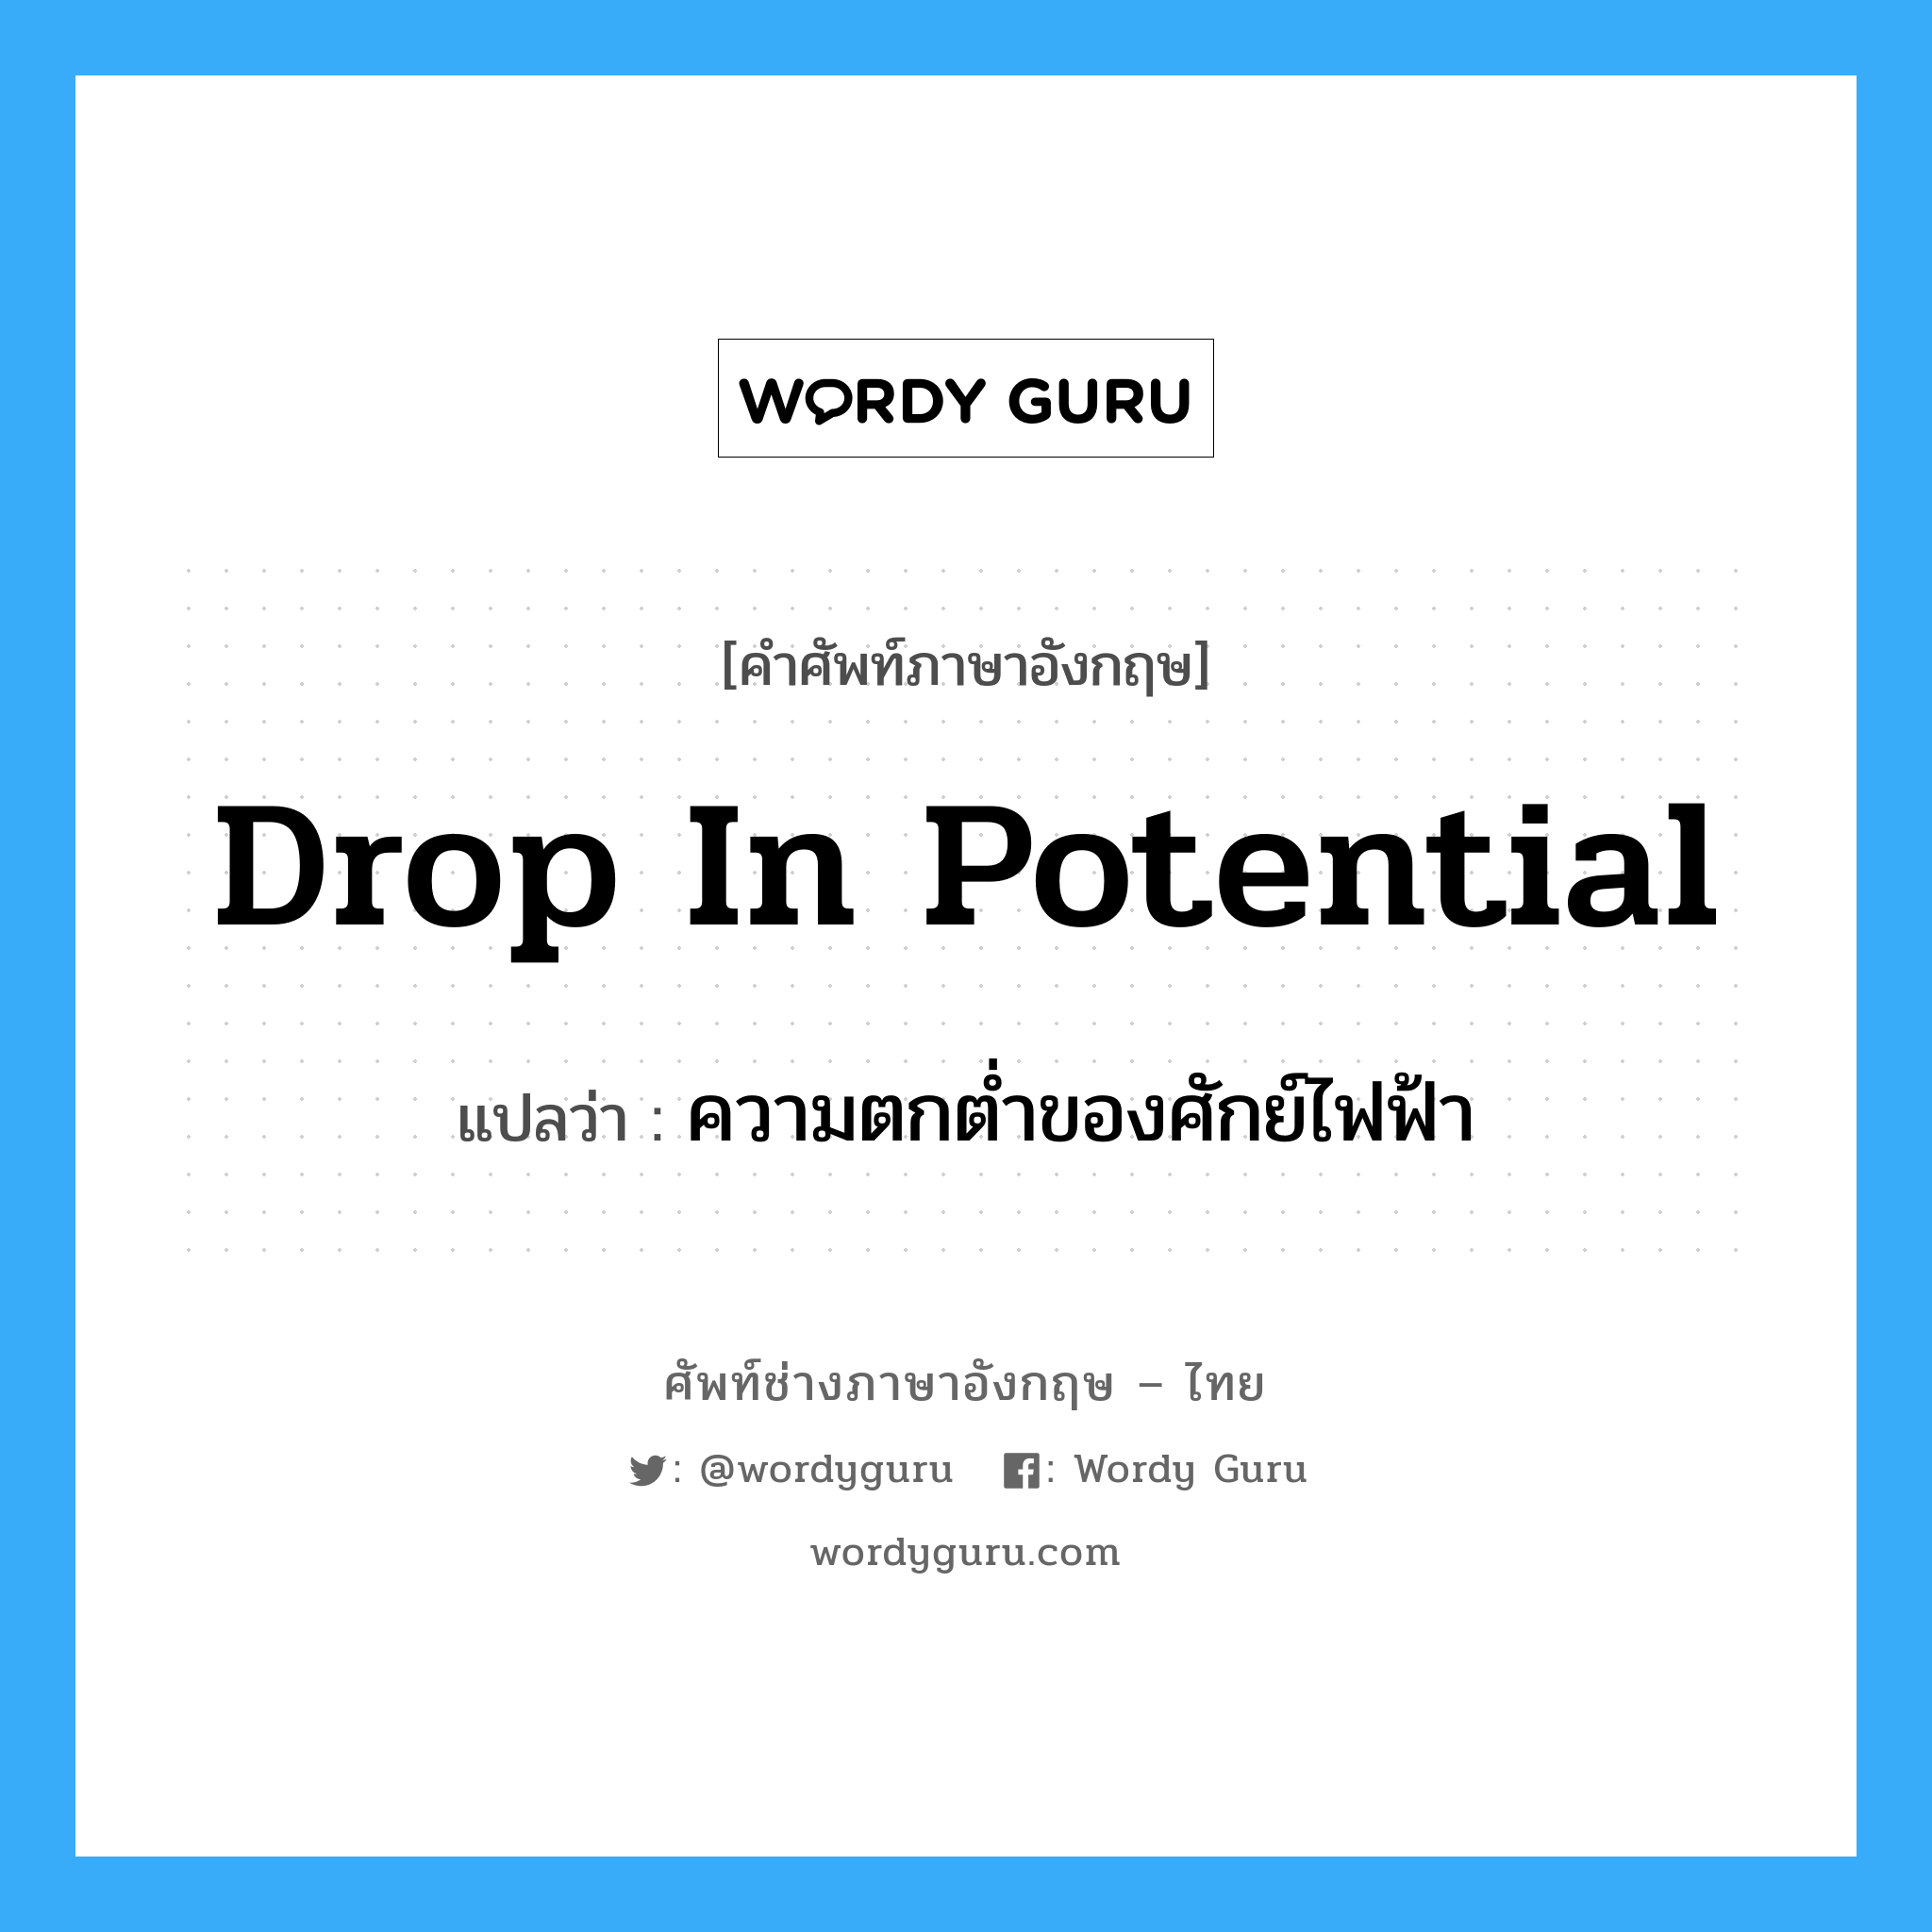 drop in potential แปลว่า?, คำศัพท์ช่างภาษาอังกฤษ - ไทย drop in potential คำศัพท์ภาษาอังกฤษ drop in potential แปลว่า ความตกต่ำของศักย์ไฟฟ้า